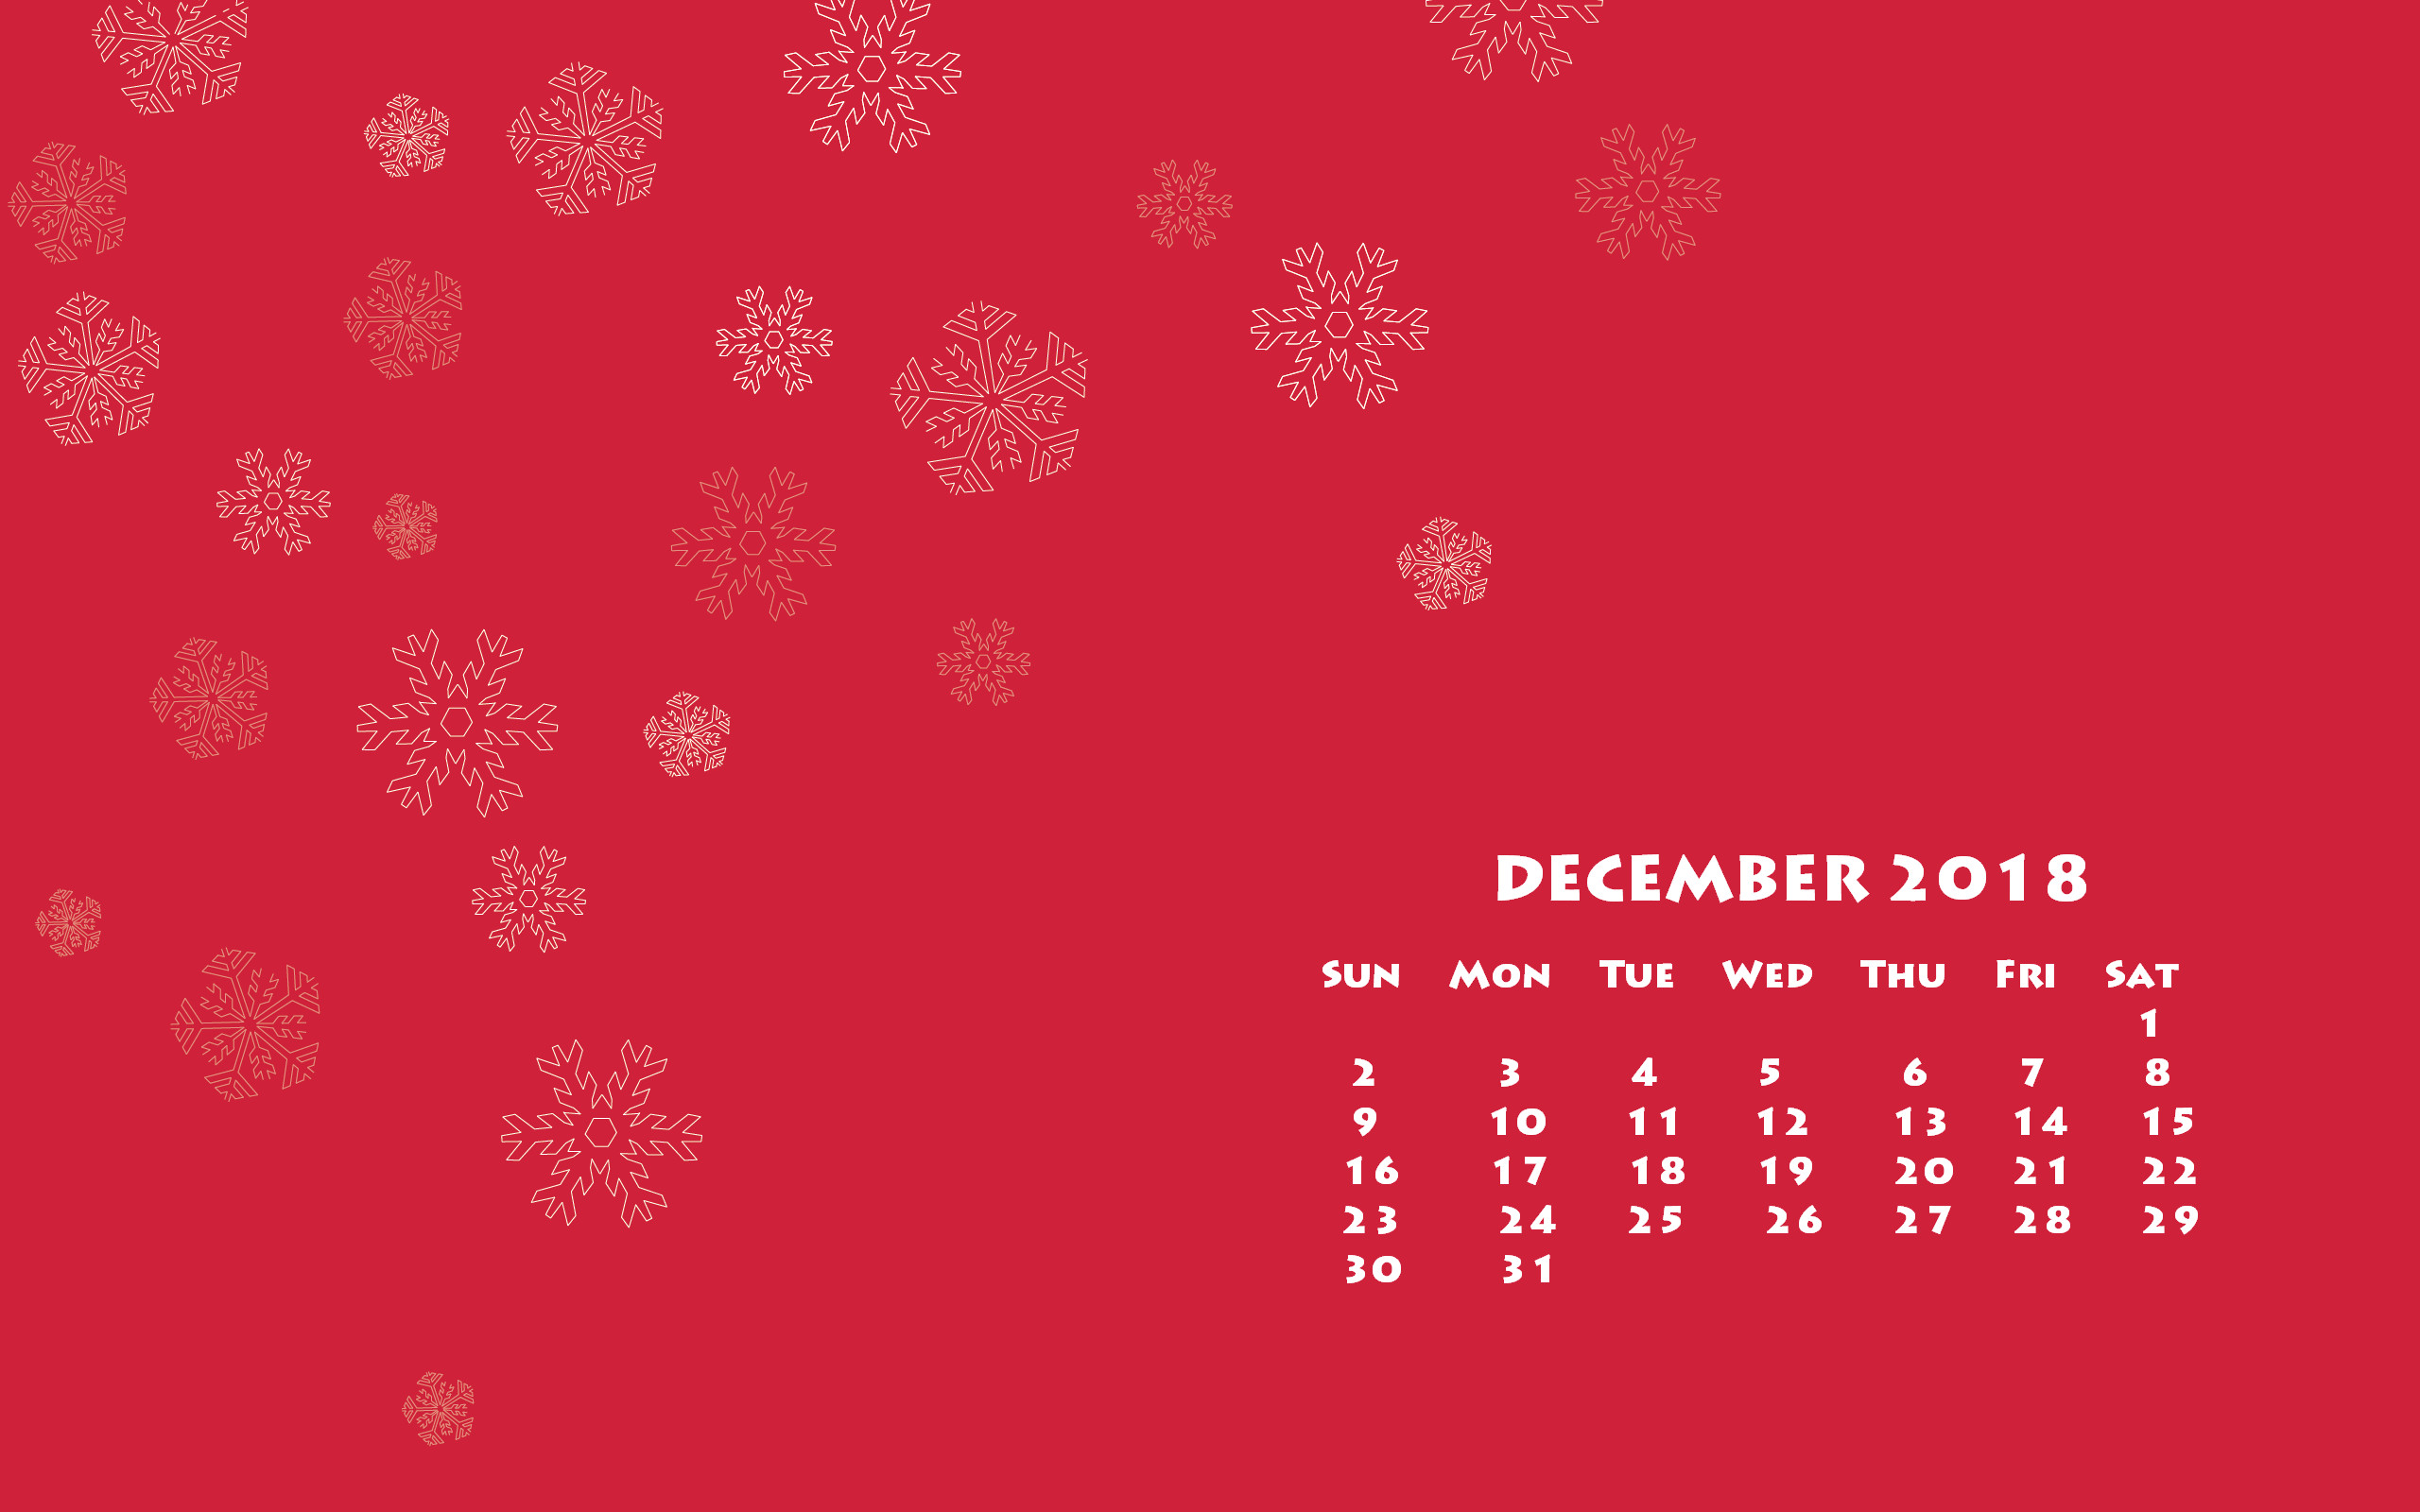 2560x1600 December 2018 Calendar Wallpaper December 2018 Desktop Calendar Wallpaper